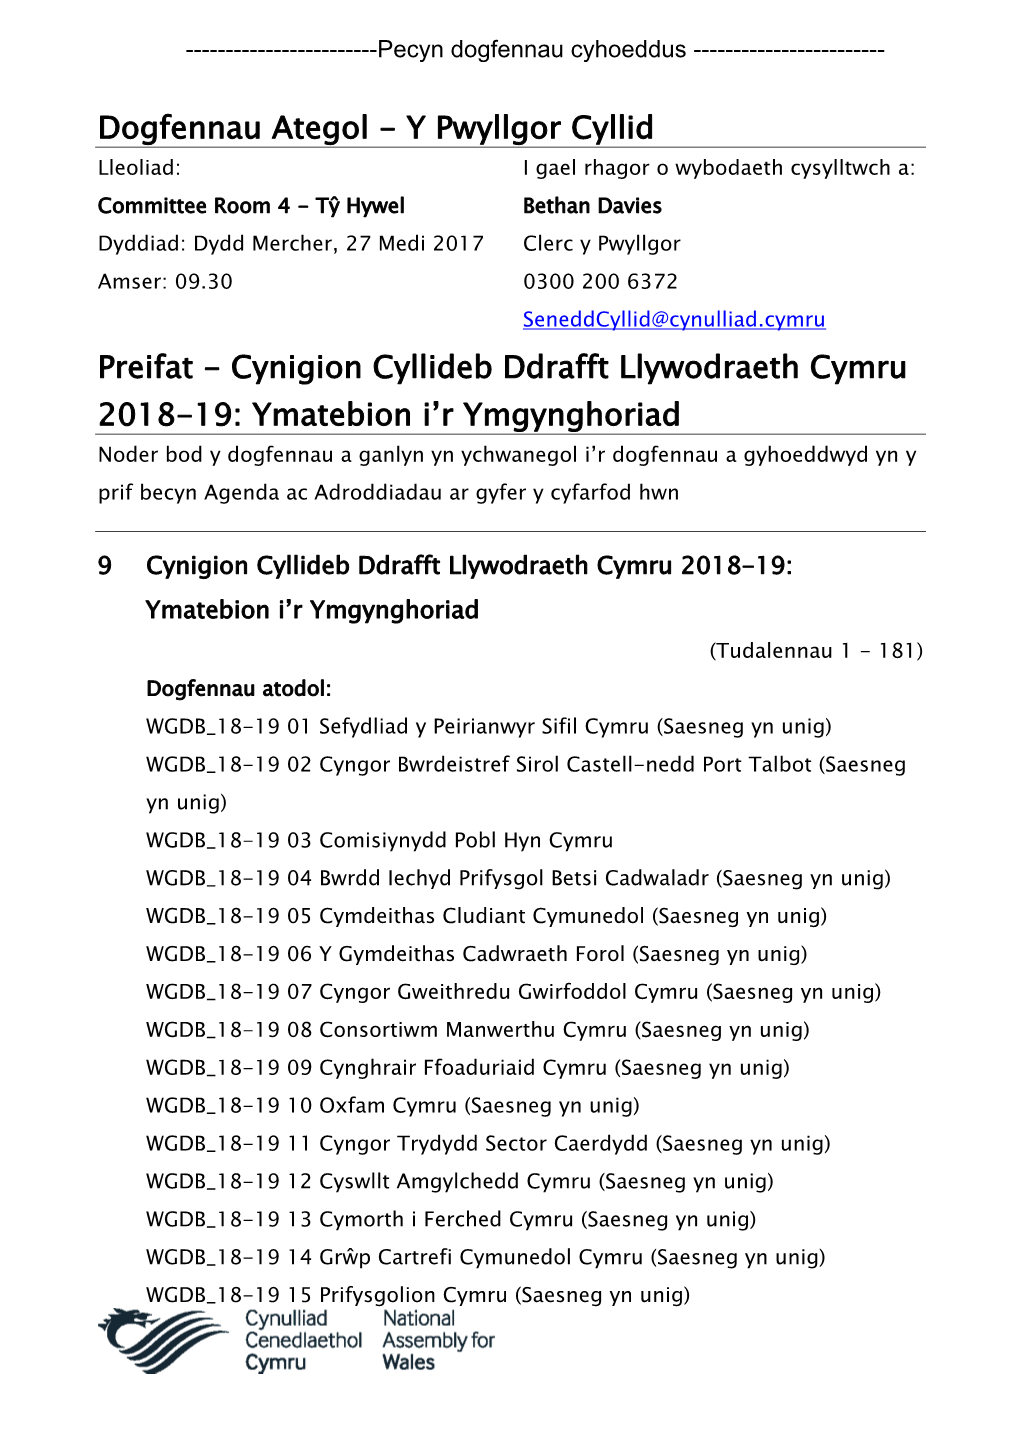 (Public Pack)Cynigion Cyllideb Ddrafft Llywodraeth Cymru 2018-19